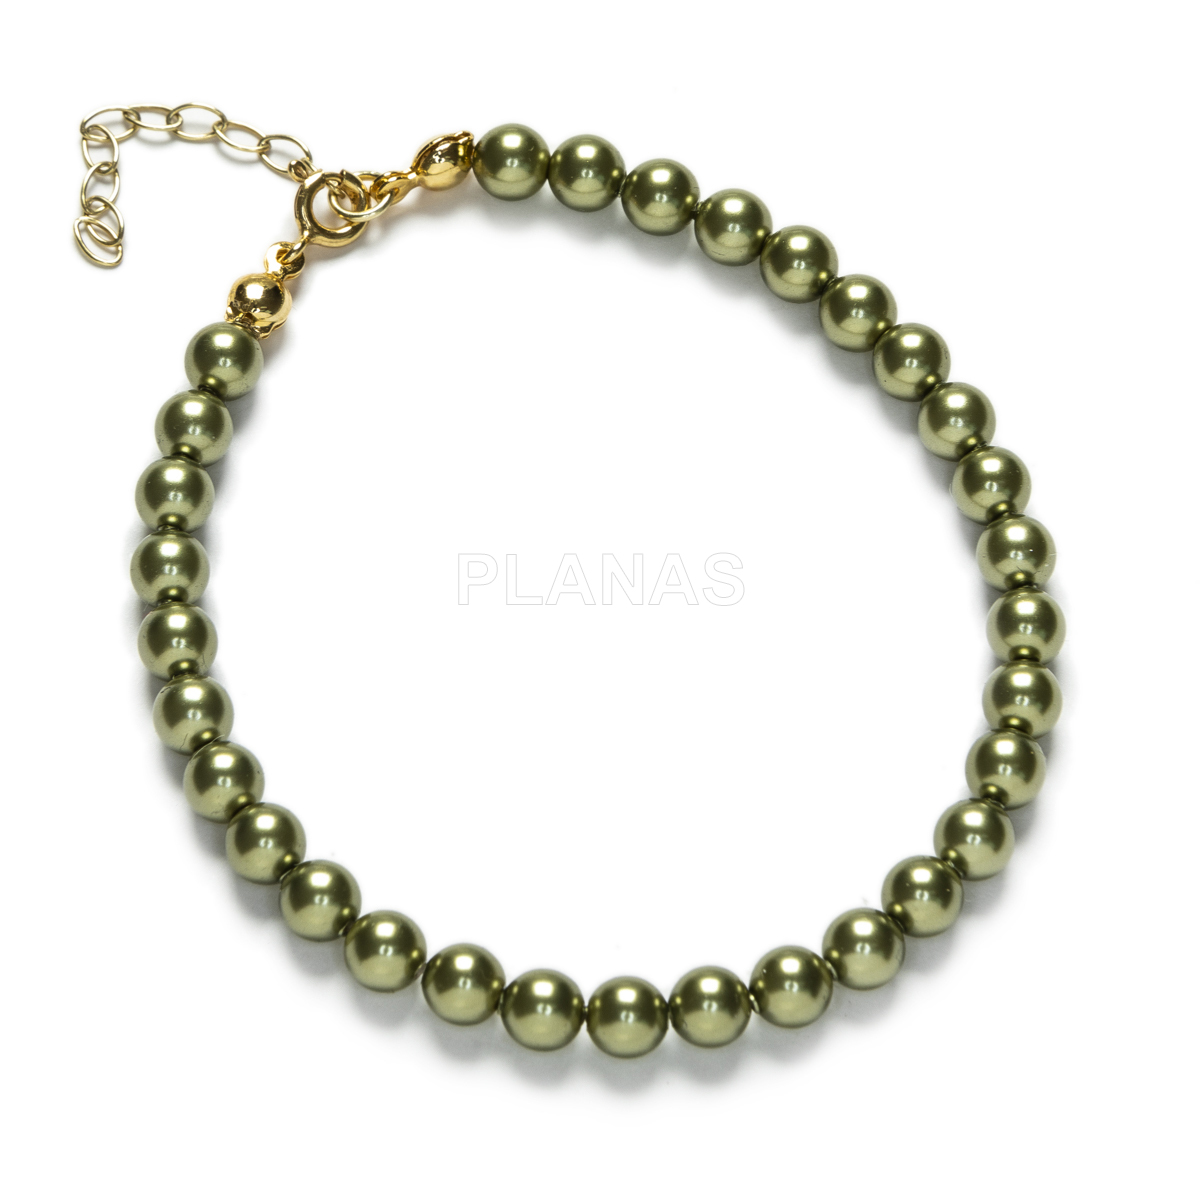 Conjunto de Collar y Pulsera en Plata de ley y Baño Oro Perlas de primera calidad en 5mm. Color Verde Oliva.